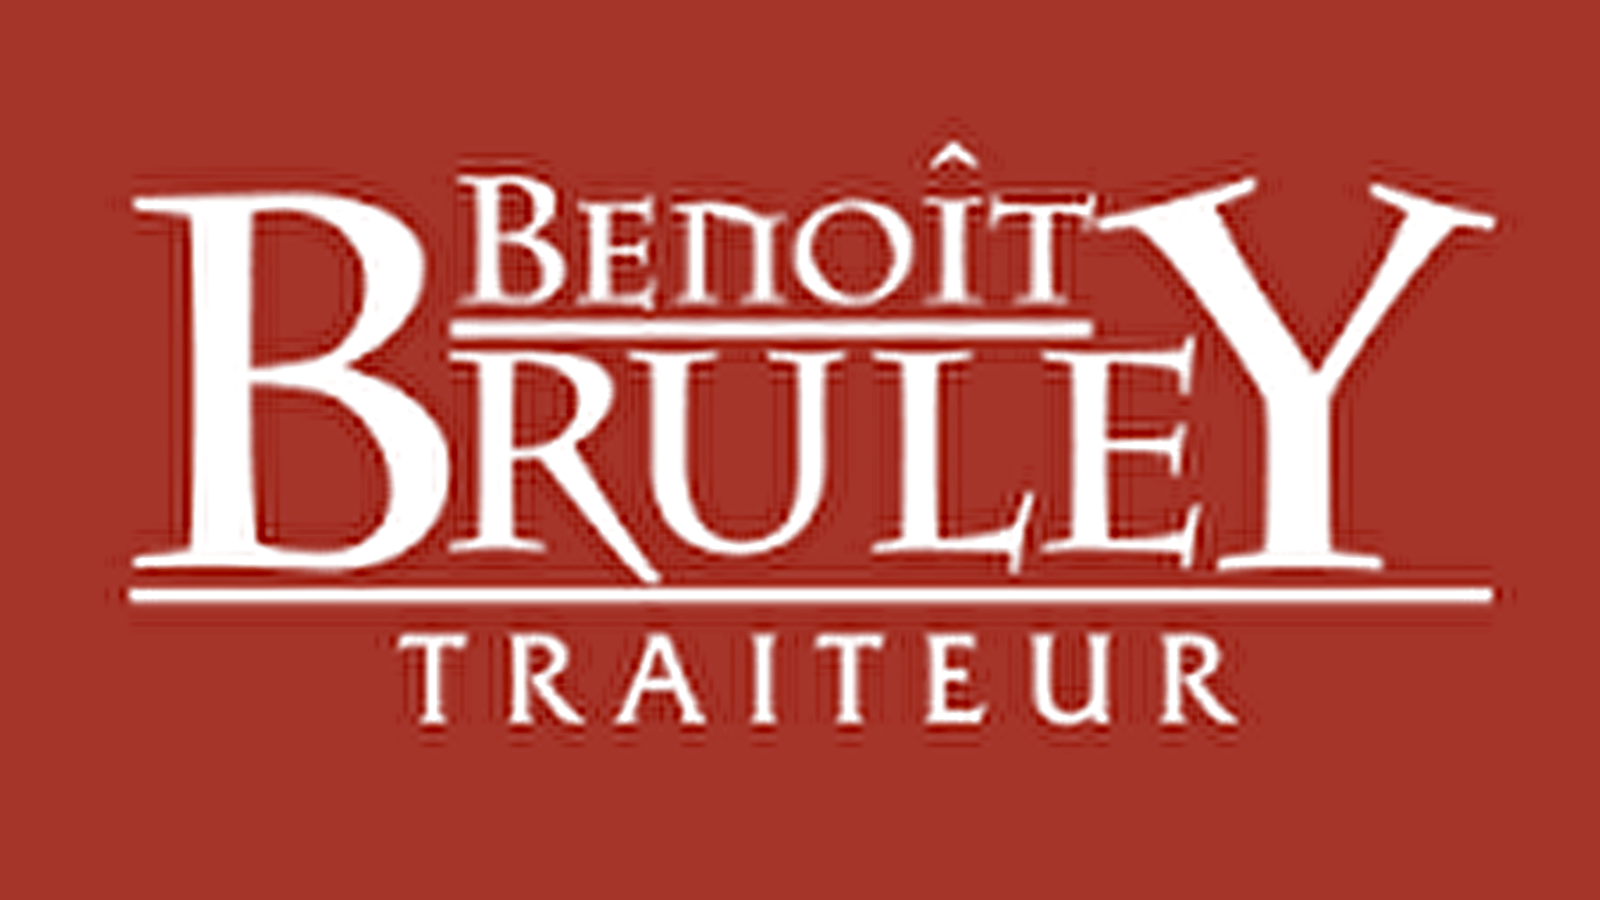 Benoît BRULEY Traiteur